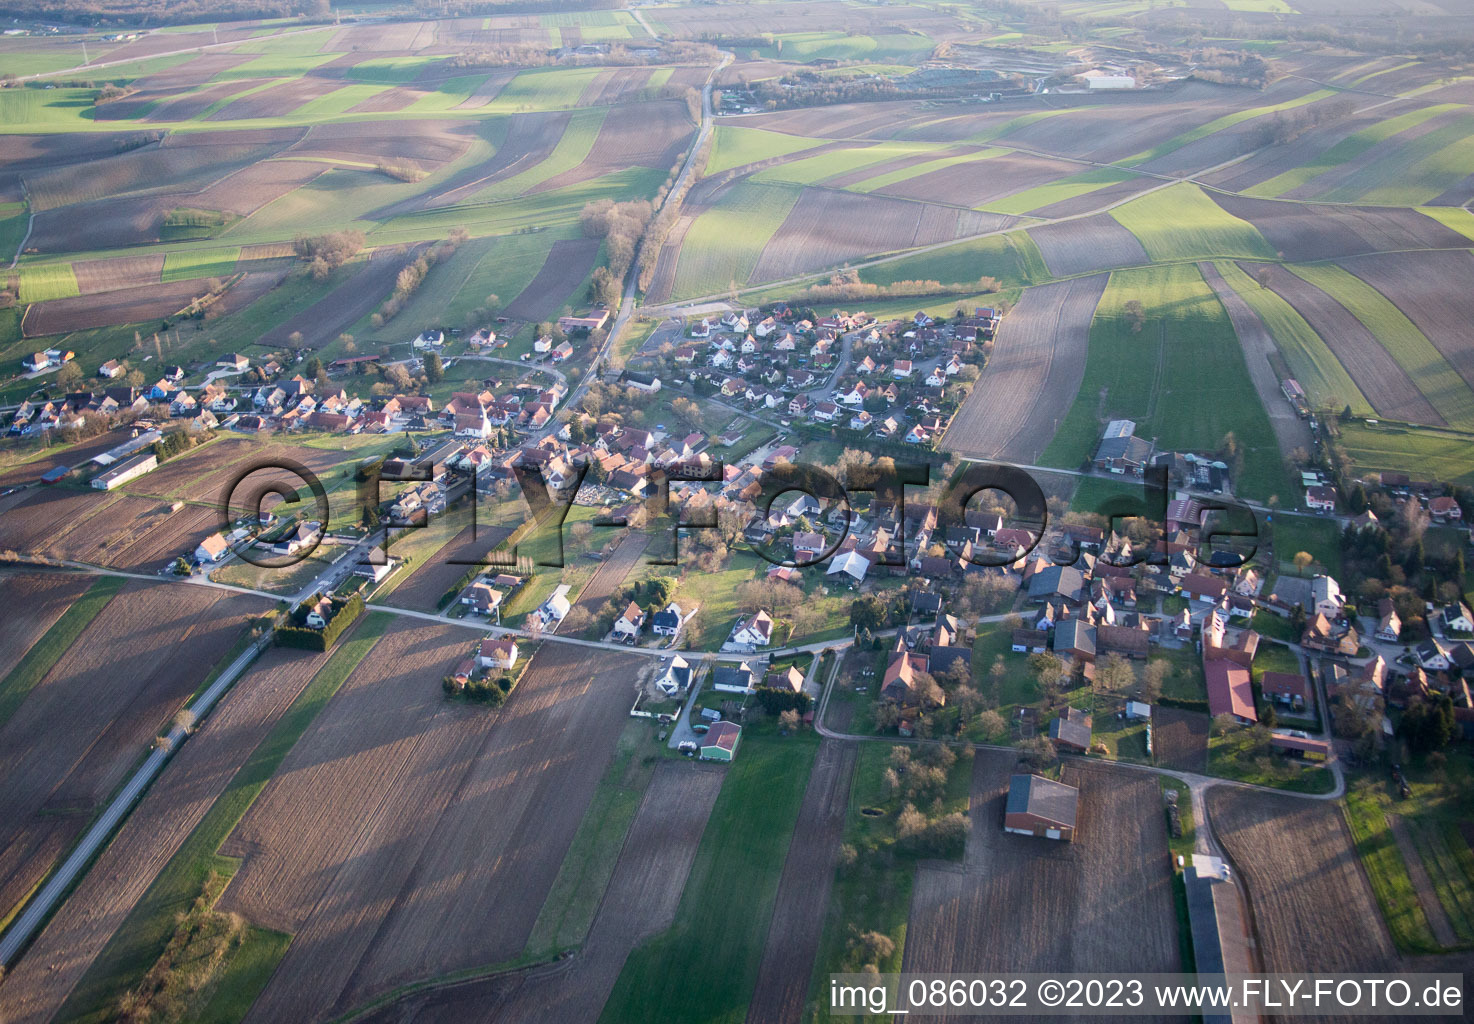 Wintzenbach im Bundesland Bas-Rhin, Frankreich aus der Luft betrachtet